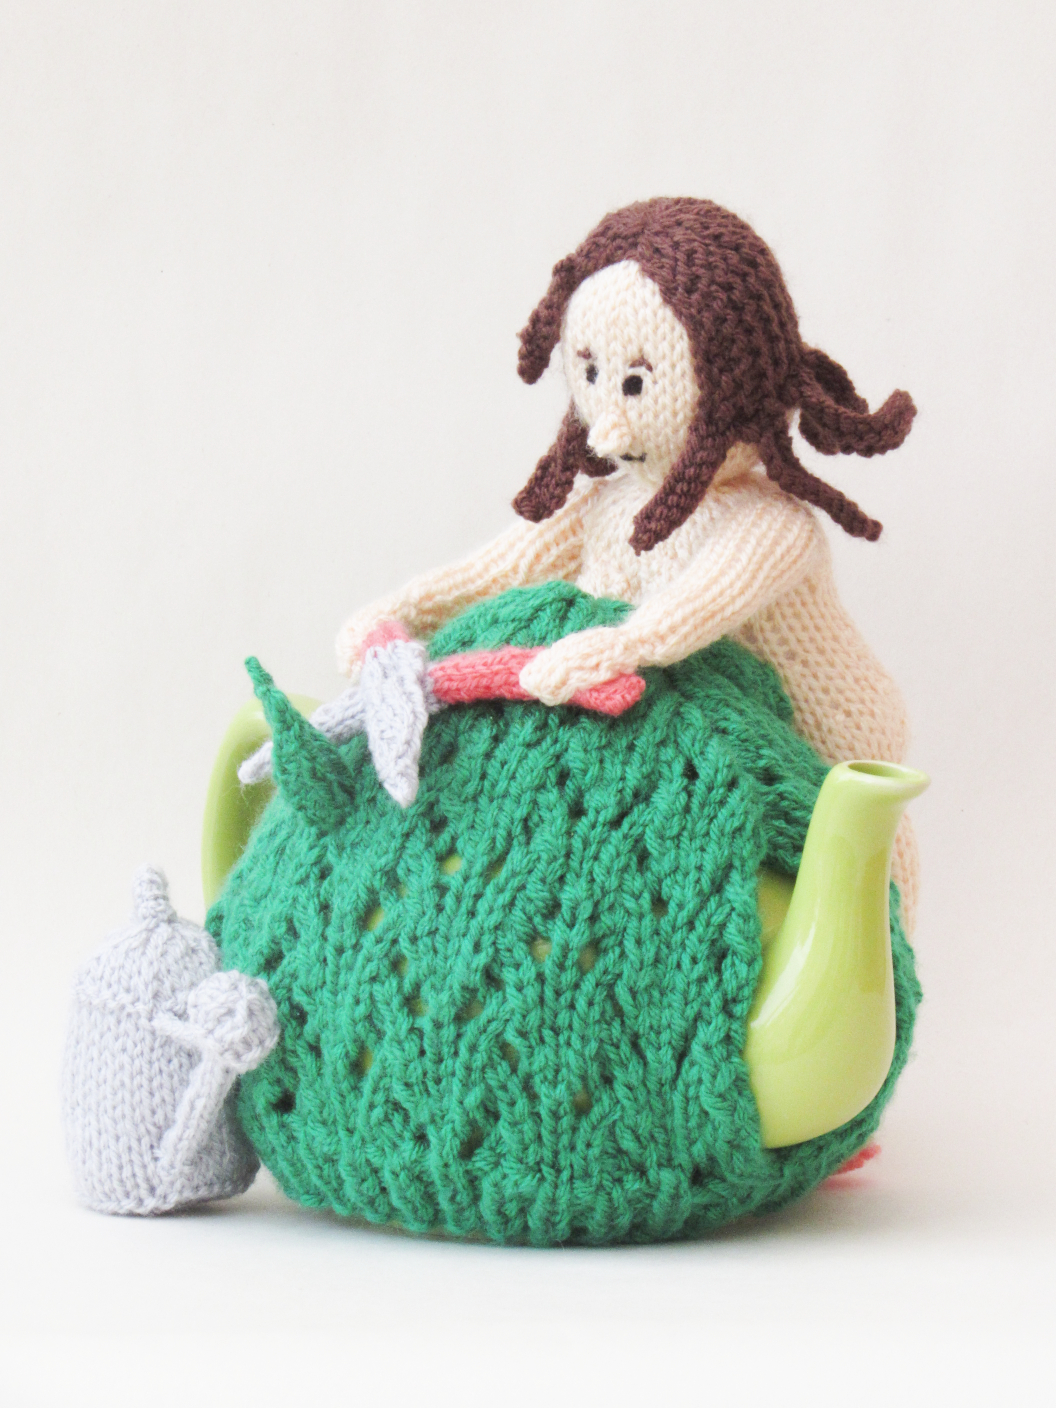 Naked Gardener knitting pattern